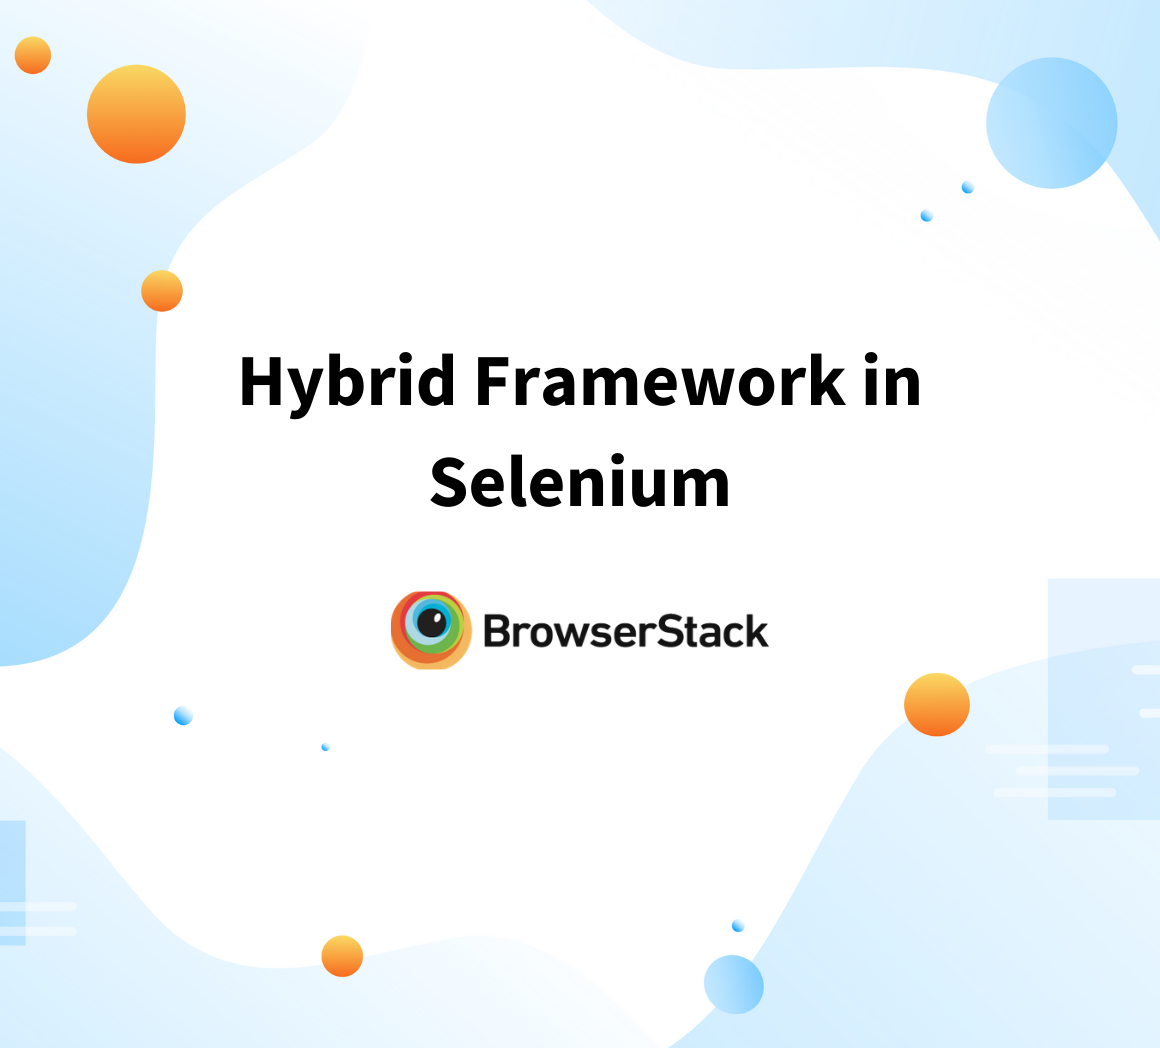 Hybrid frameworks in Selenium